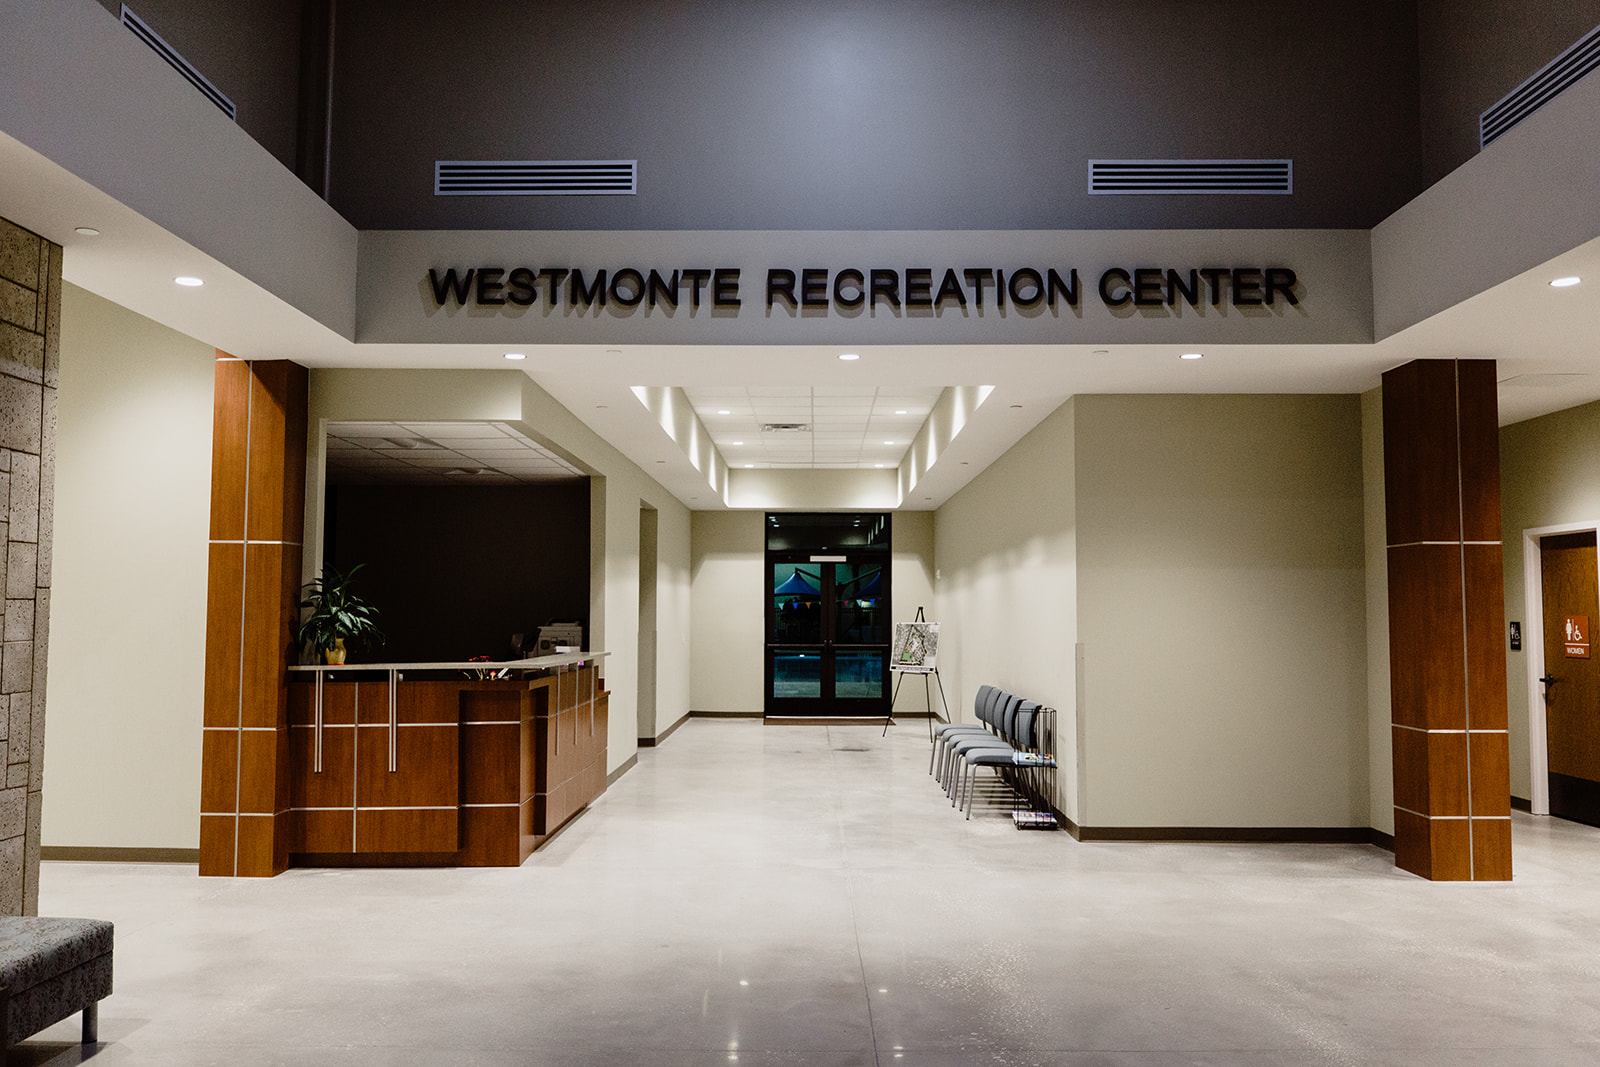 Westmonte Recreation Center